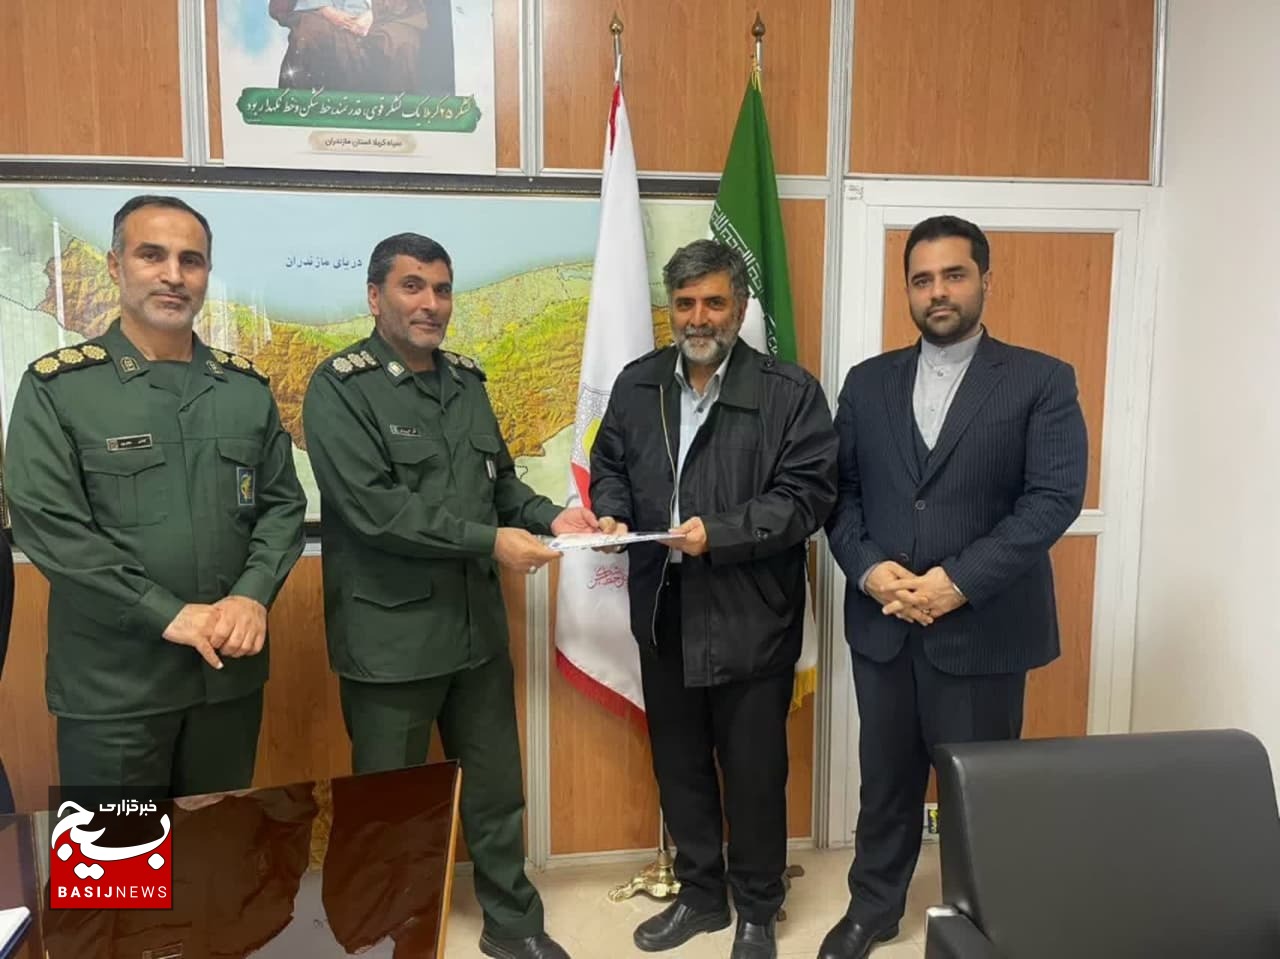 دکتر یحیی صالح طبری رئیس هیئت پزشکی ورزشی بسیج و سپاه کربلای استان مازندران شد